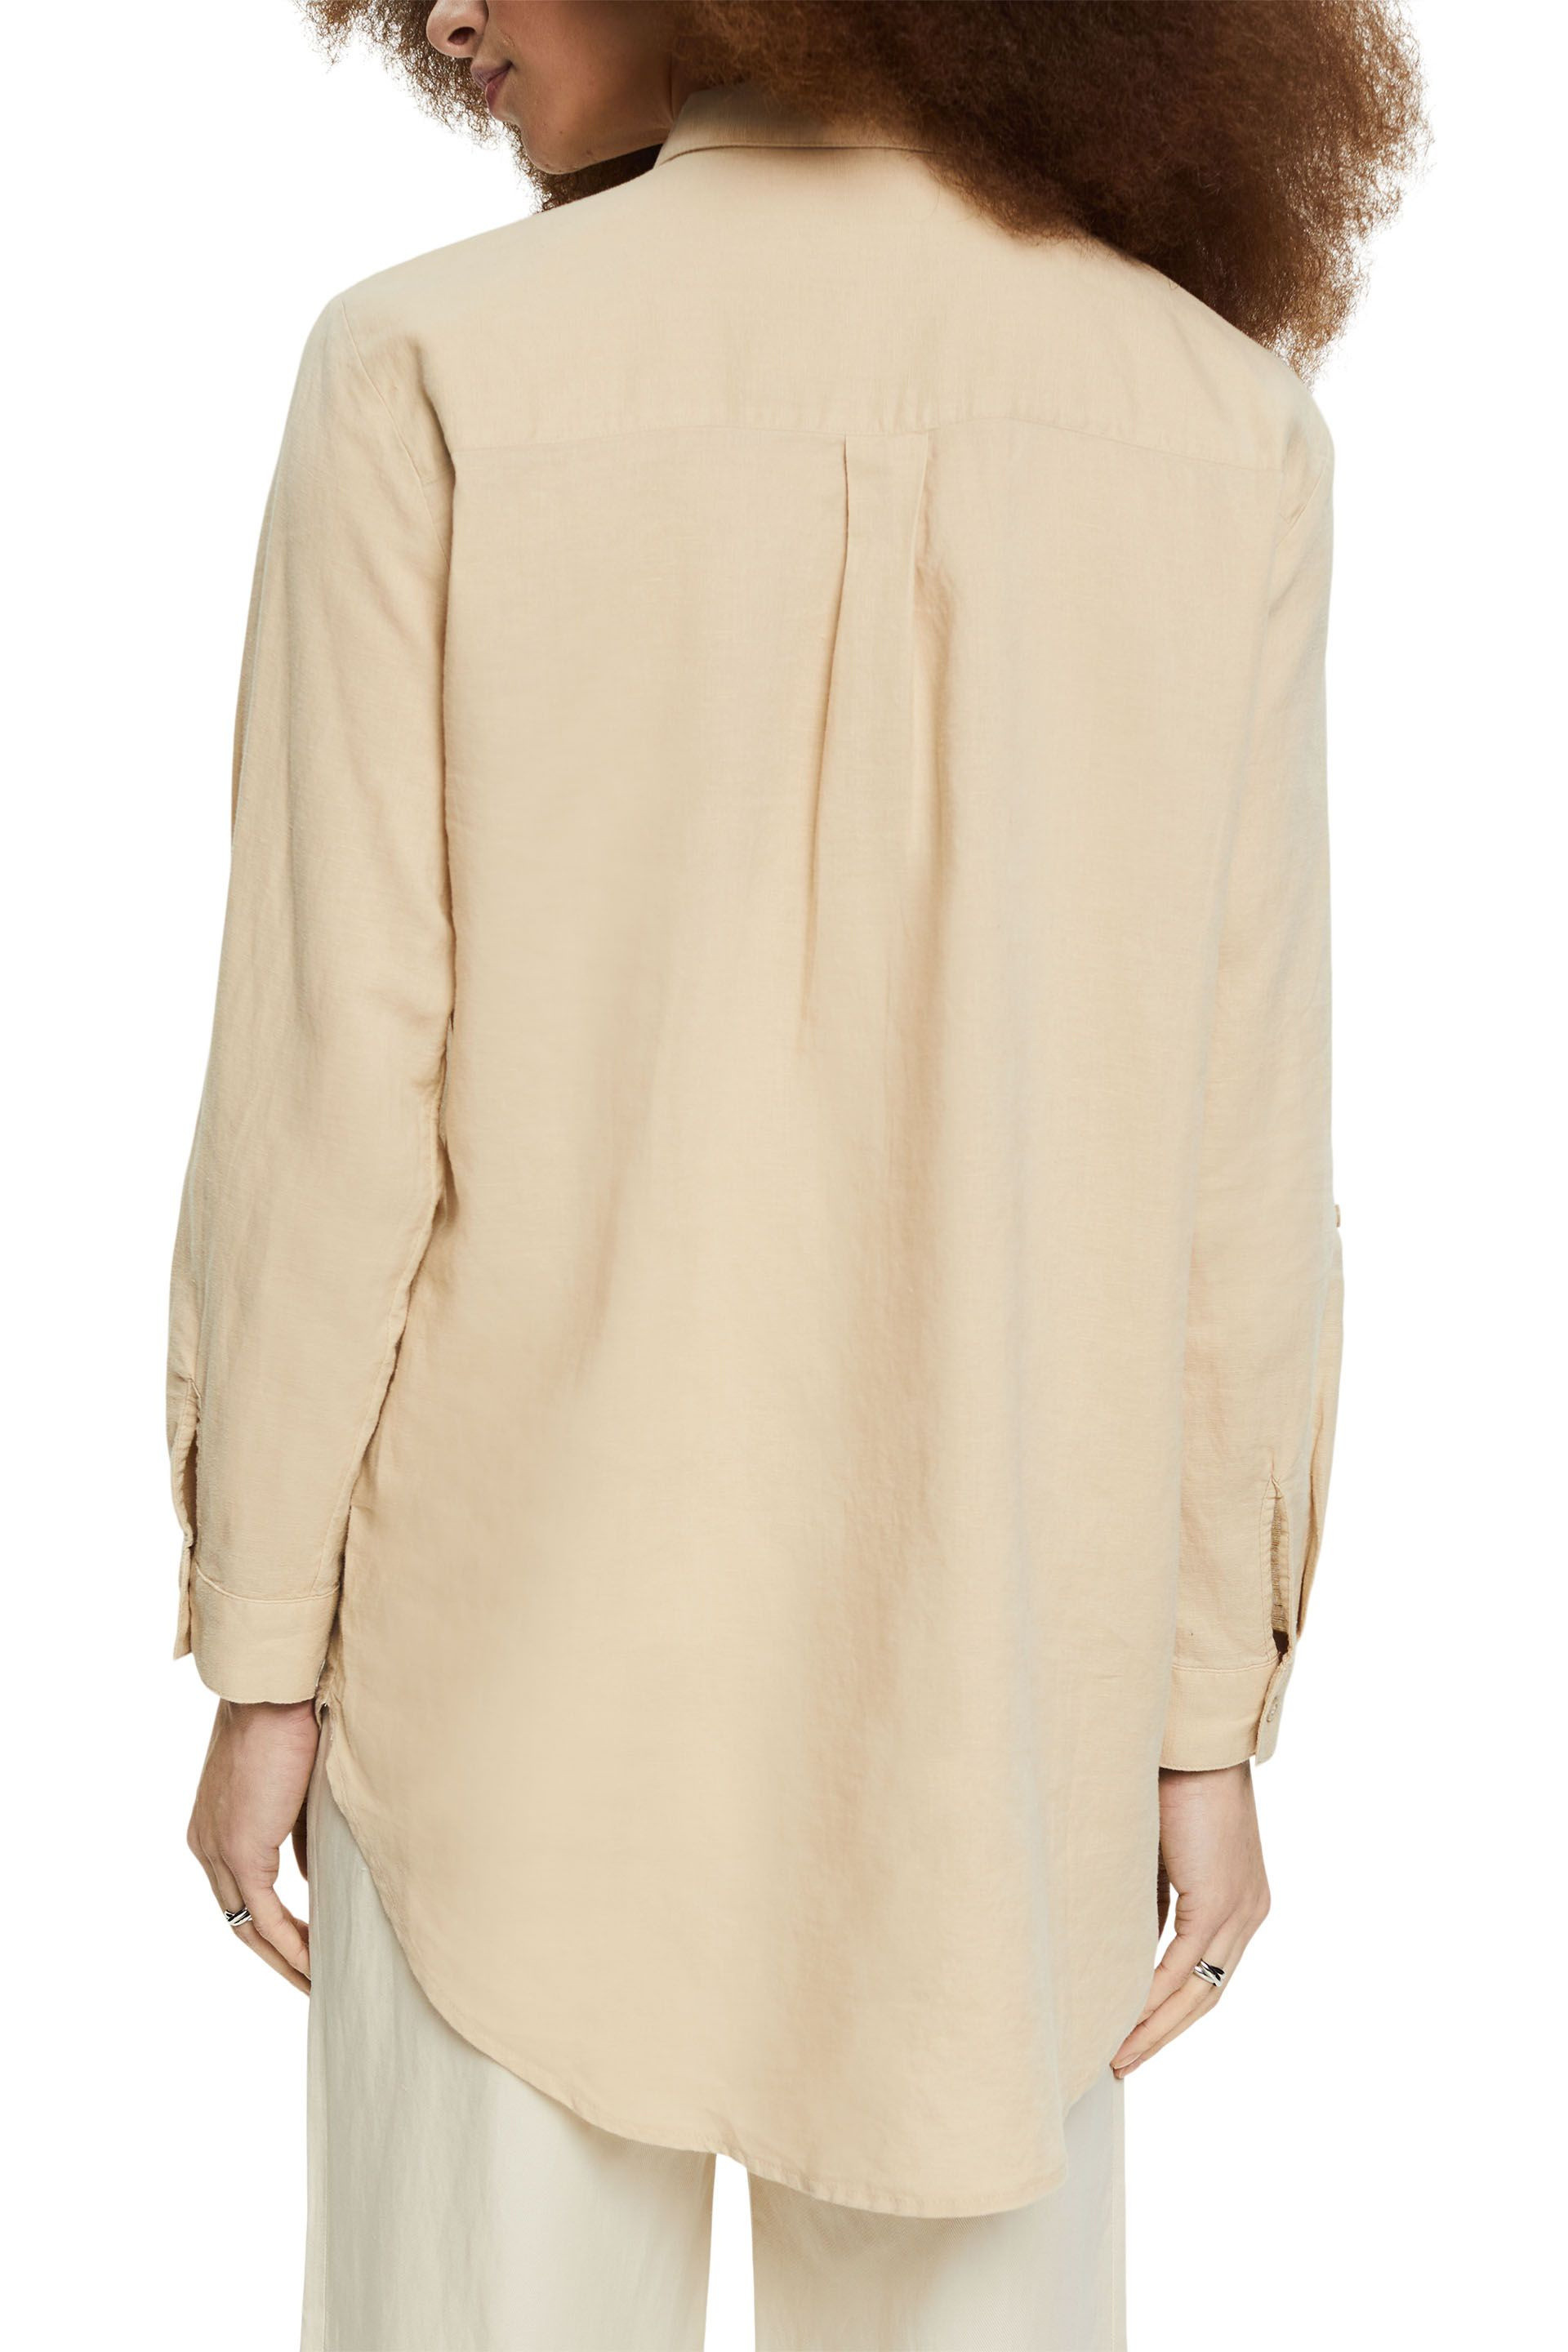 Linen blend shirt, Beige, large image number 2